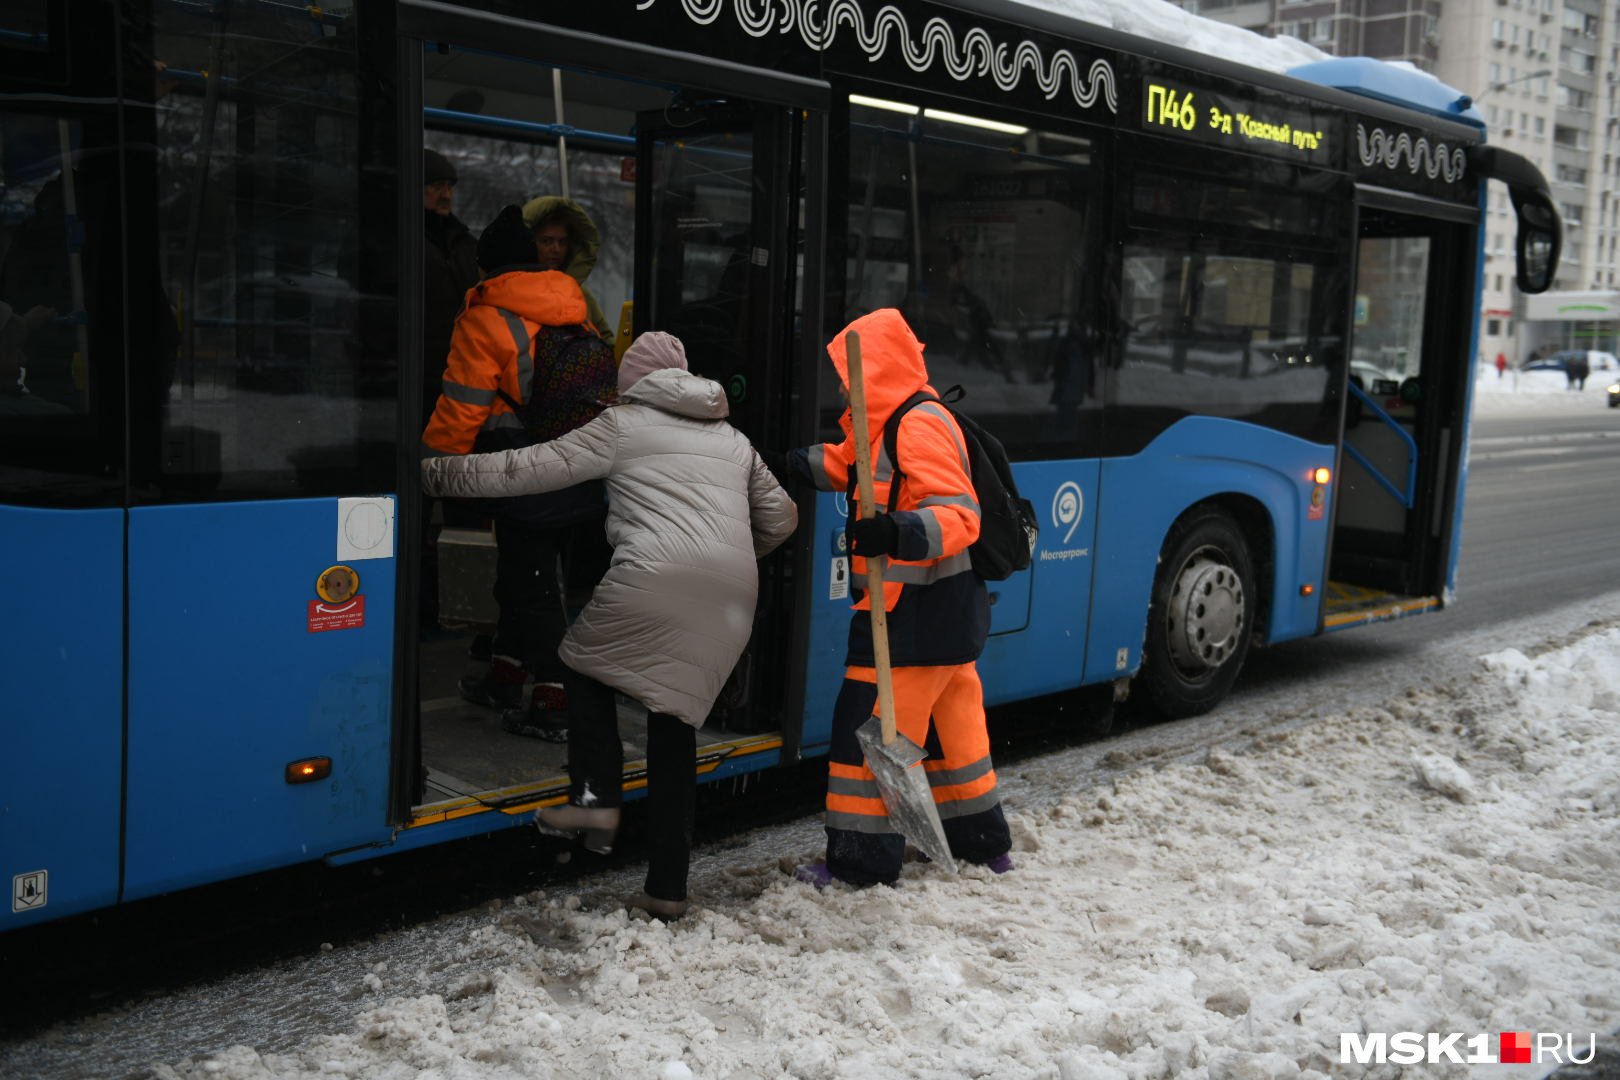 Дворники помогают бабушке забраться в автобус